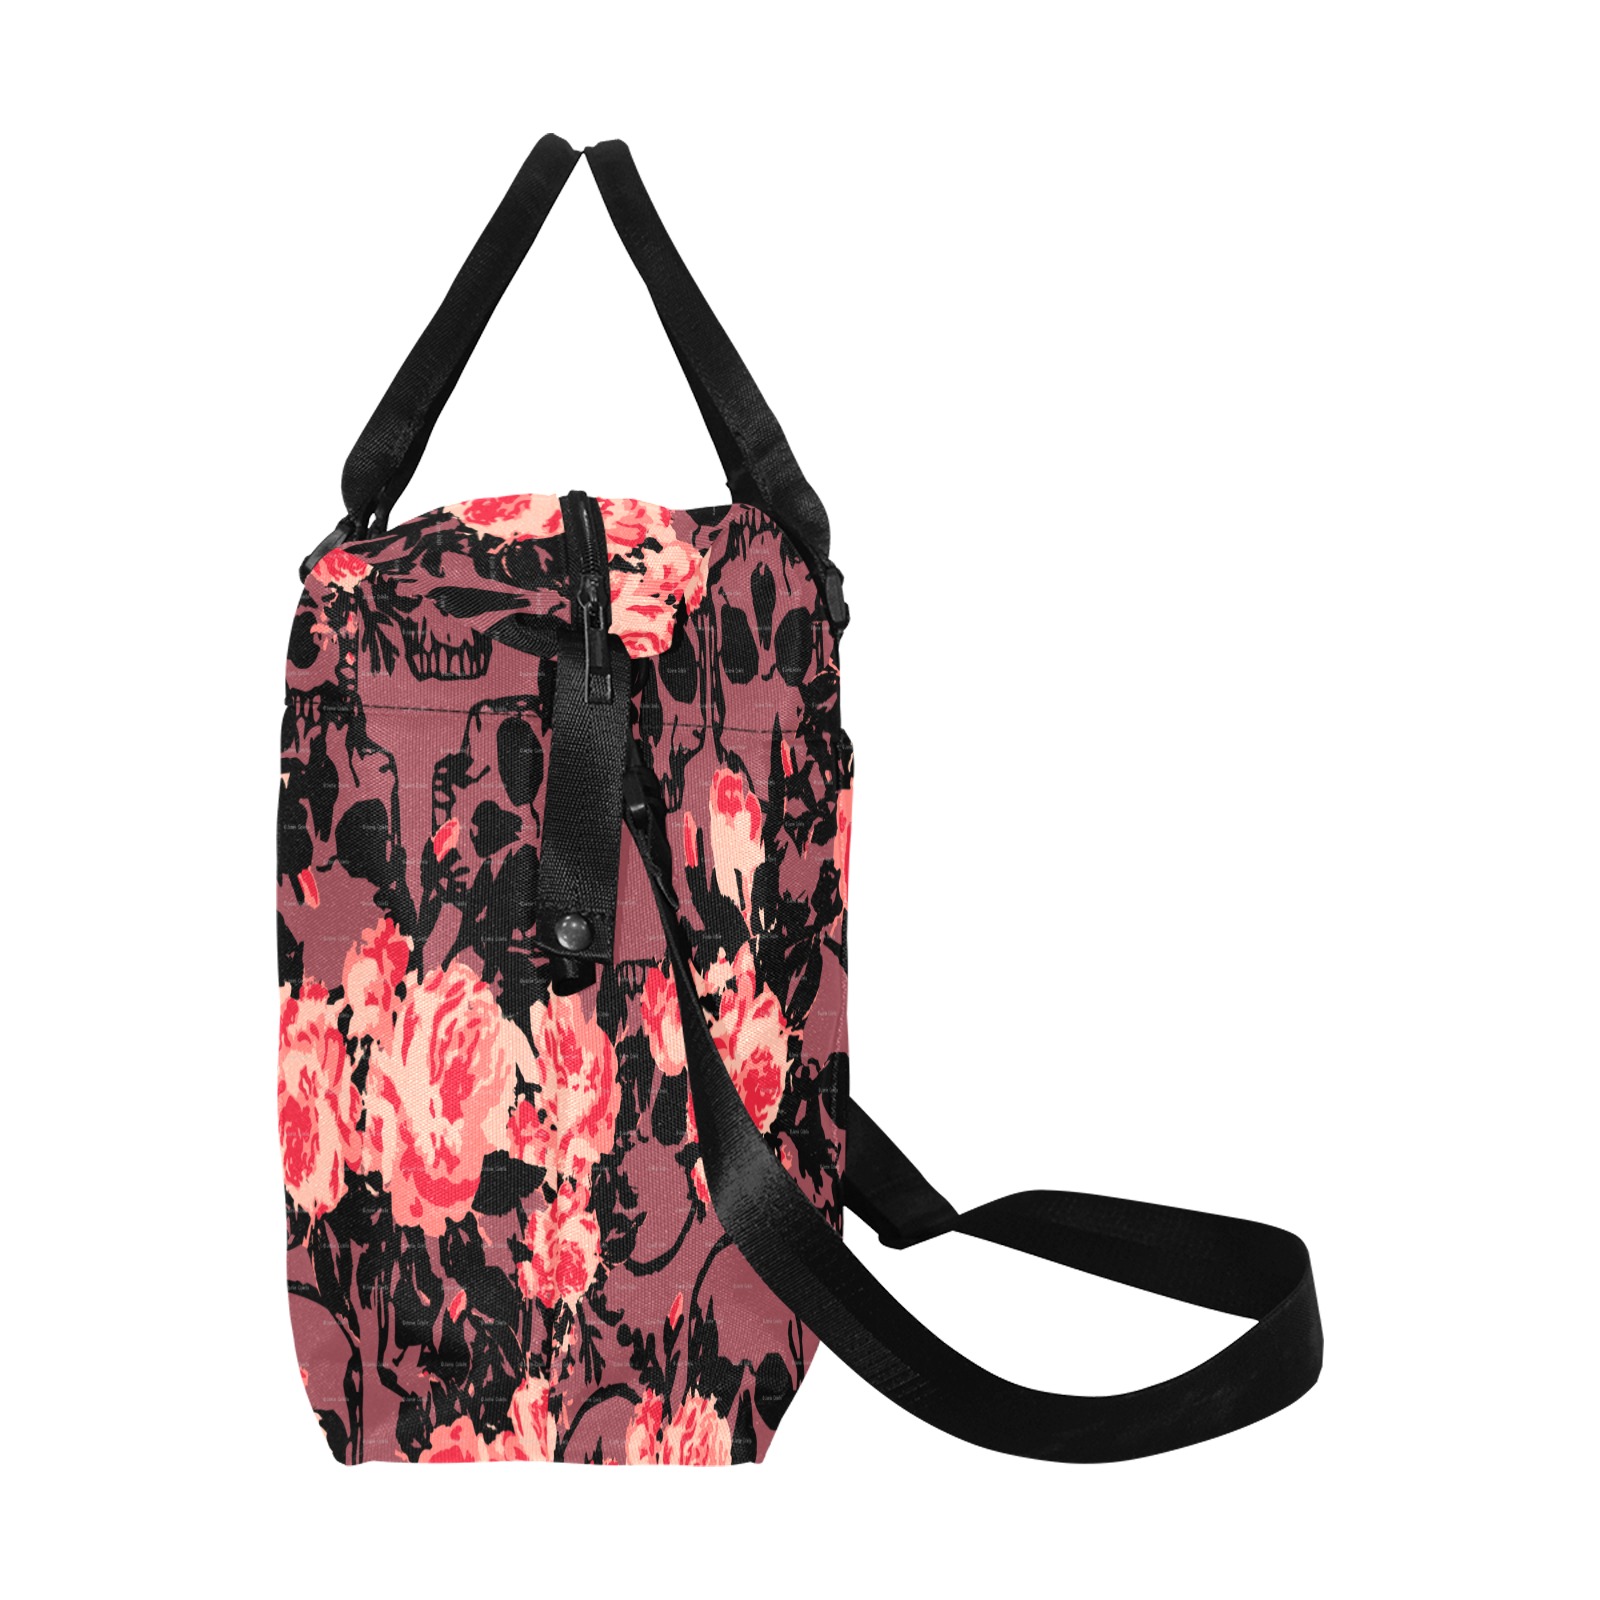 Pink and Black Skull Travel Bag Large Capacity Duffle Bag (Model 1715)